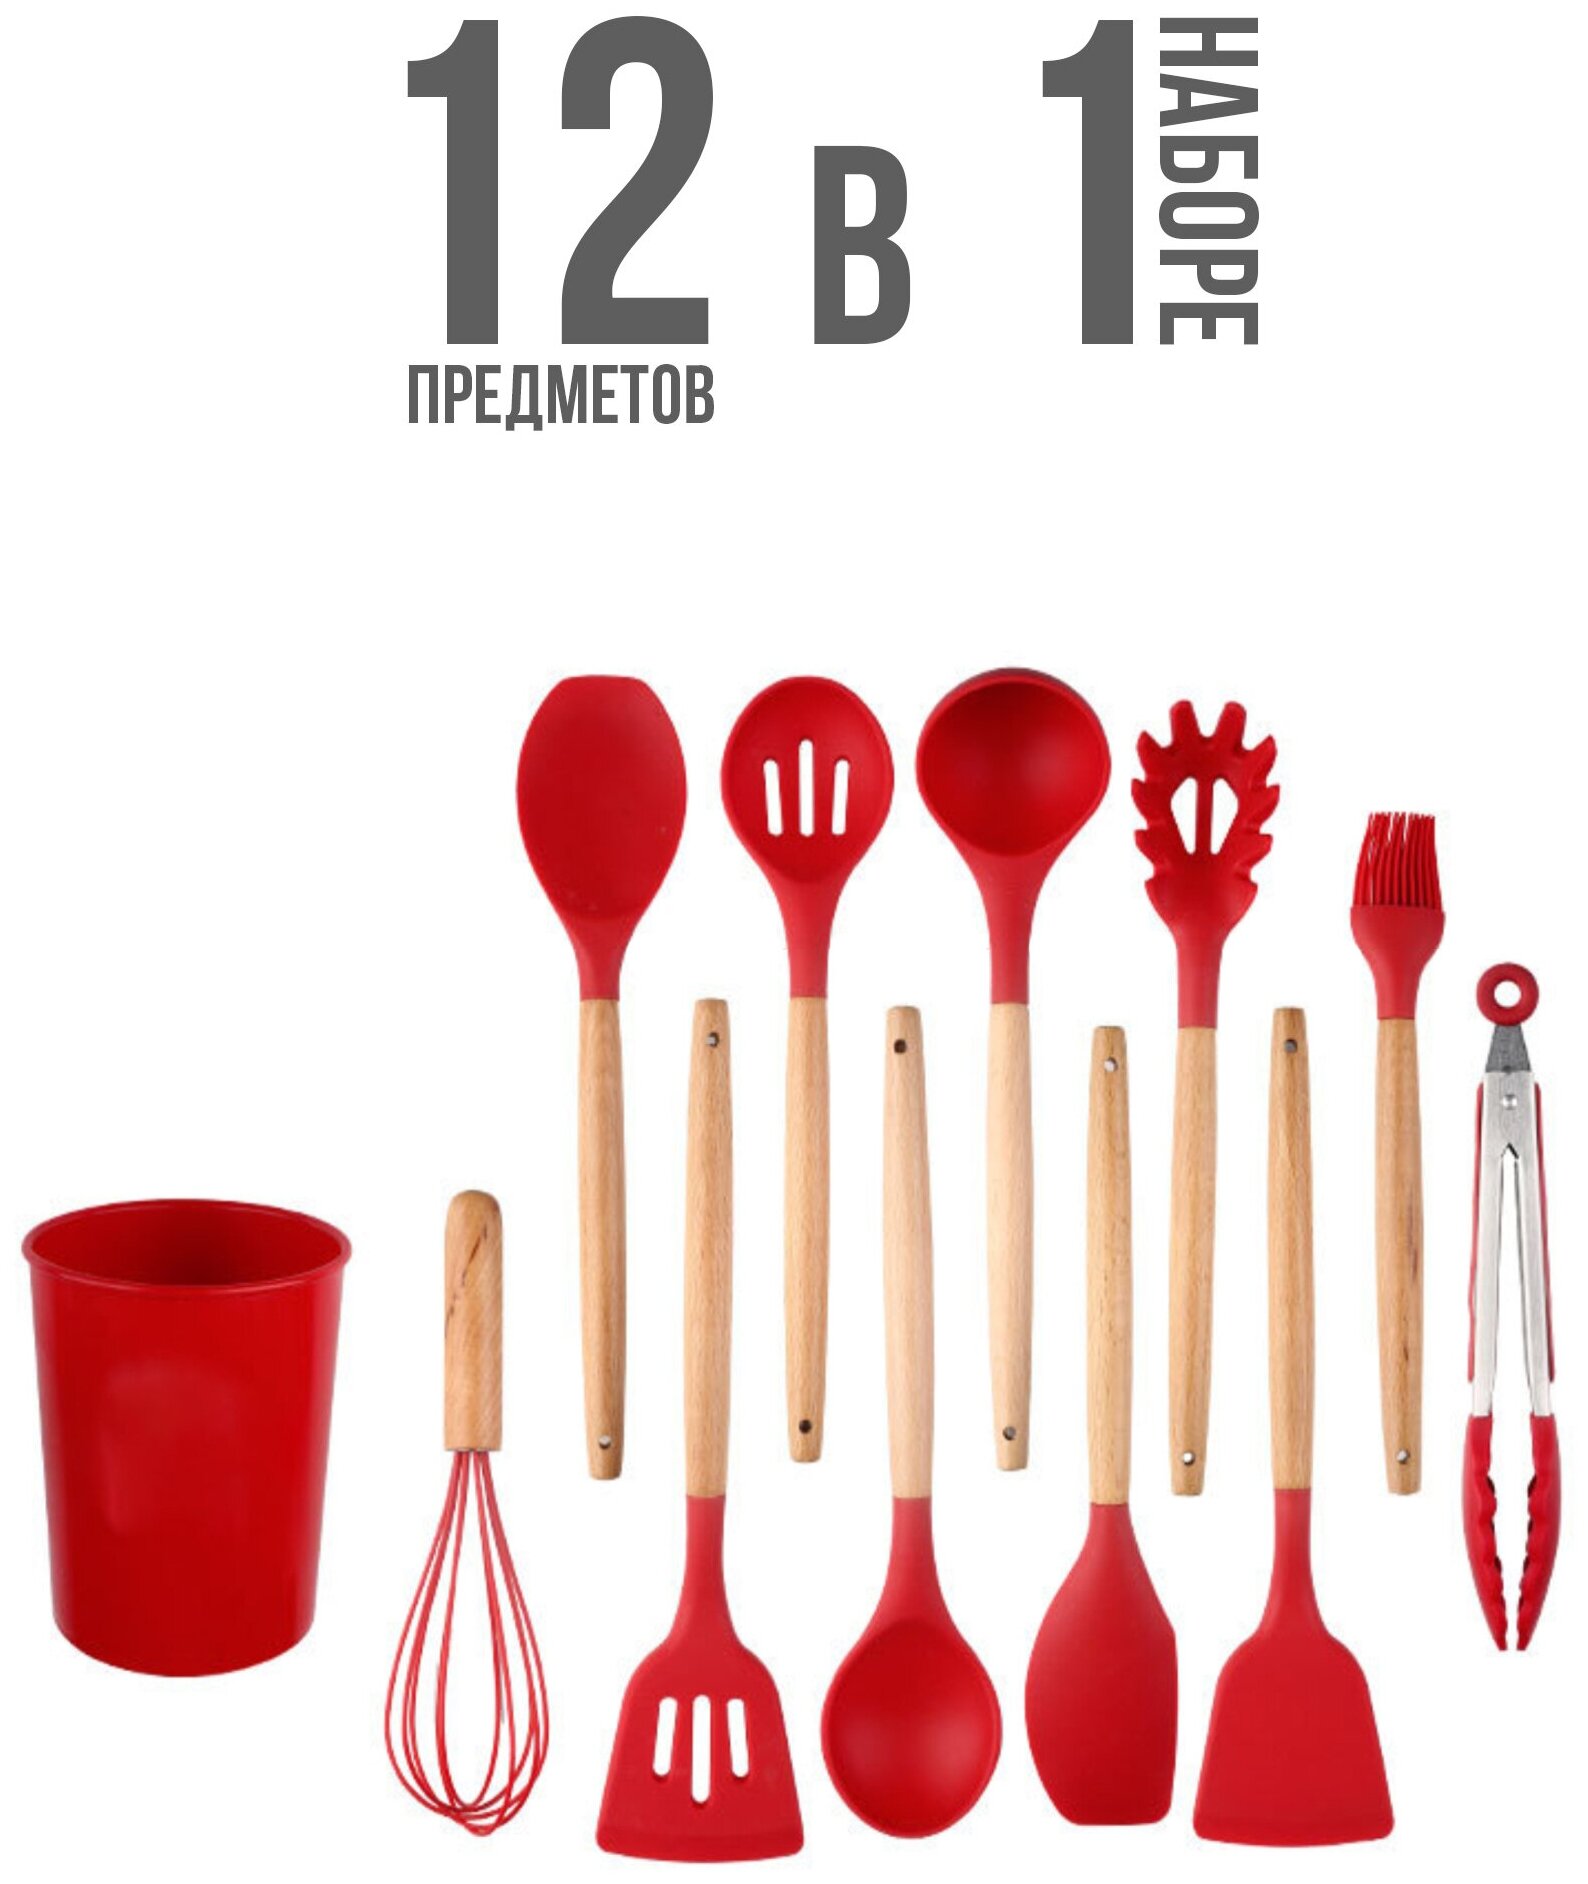 IBRICO / Набор кухонных принадлежностей / Кухонный набор из 11 предметов